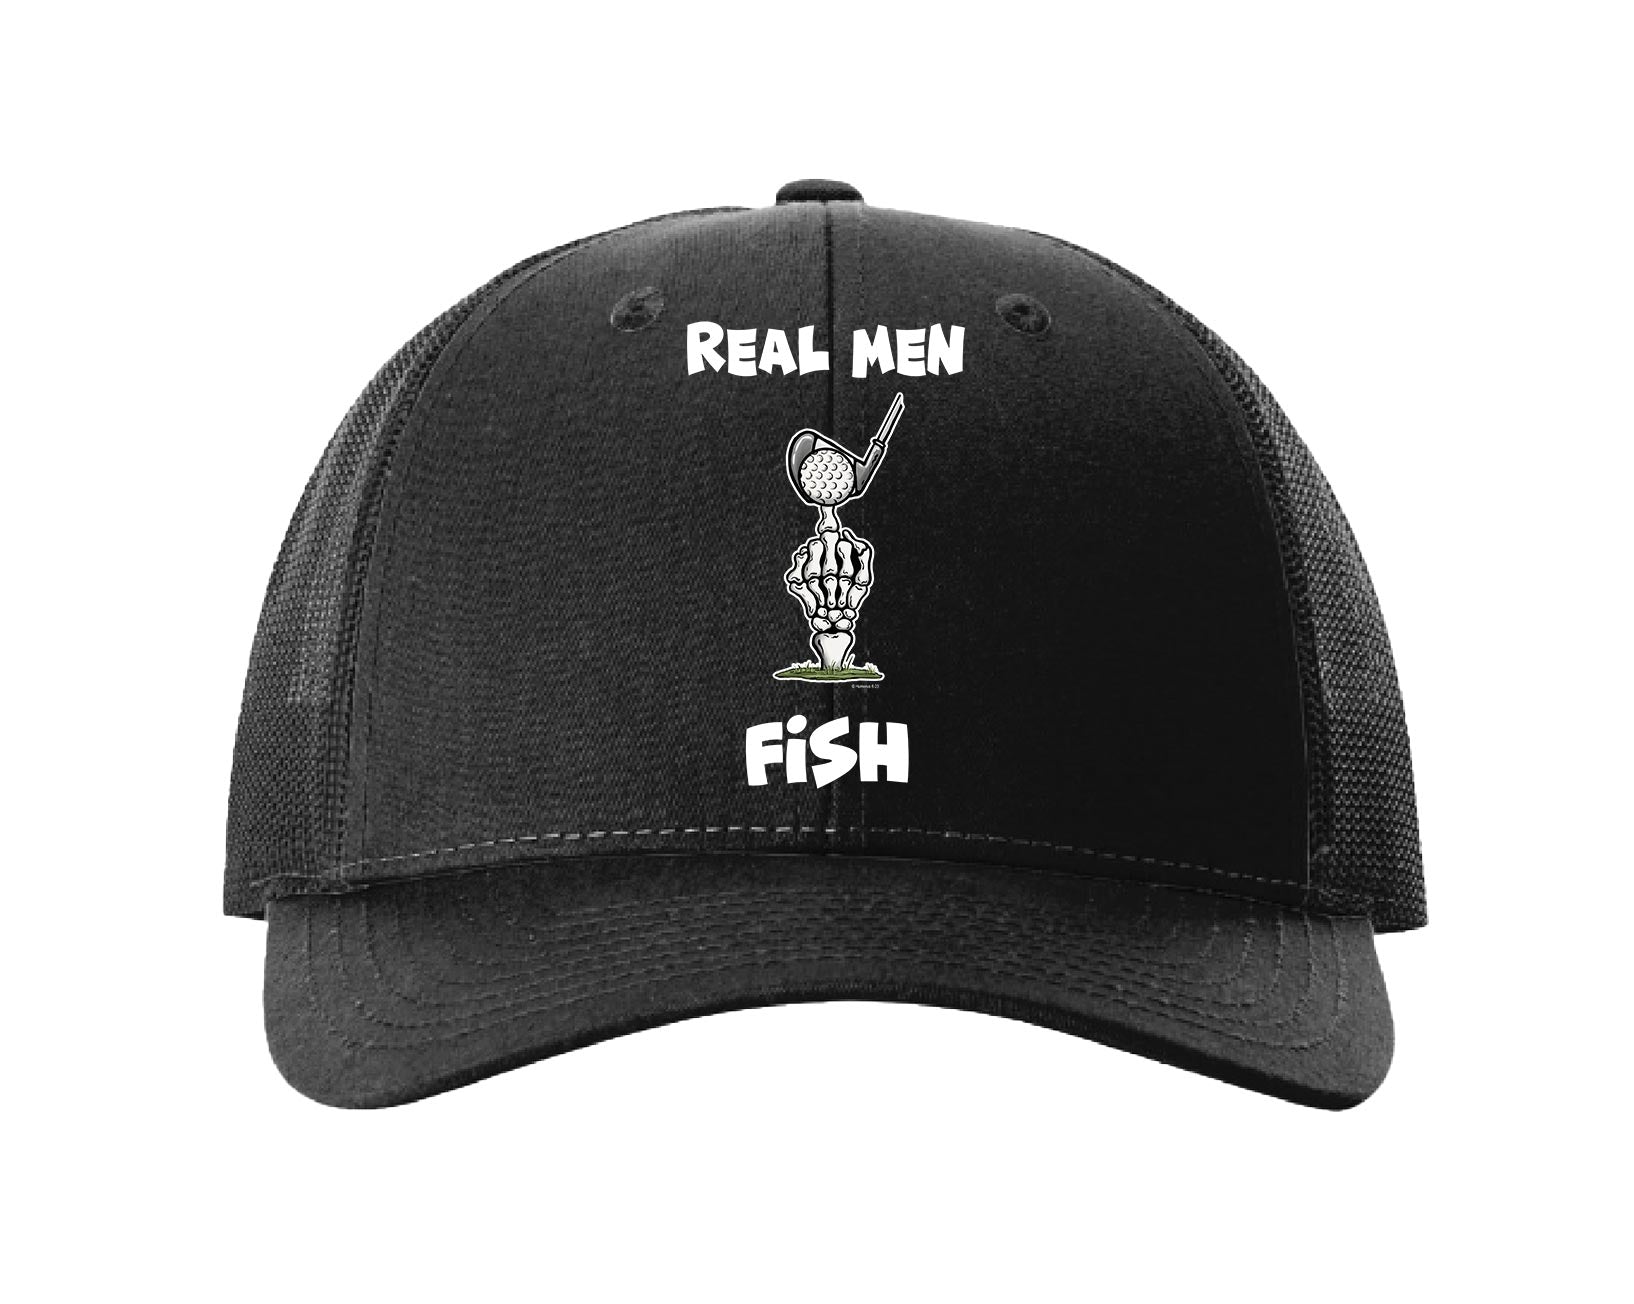 New Fish Bone Men's Women's Snapback Gorra Summer Fisher Brand Men